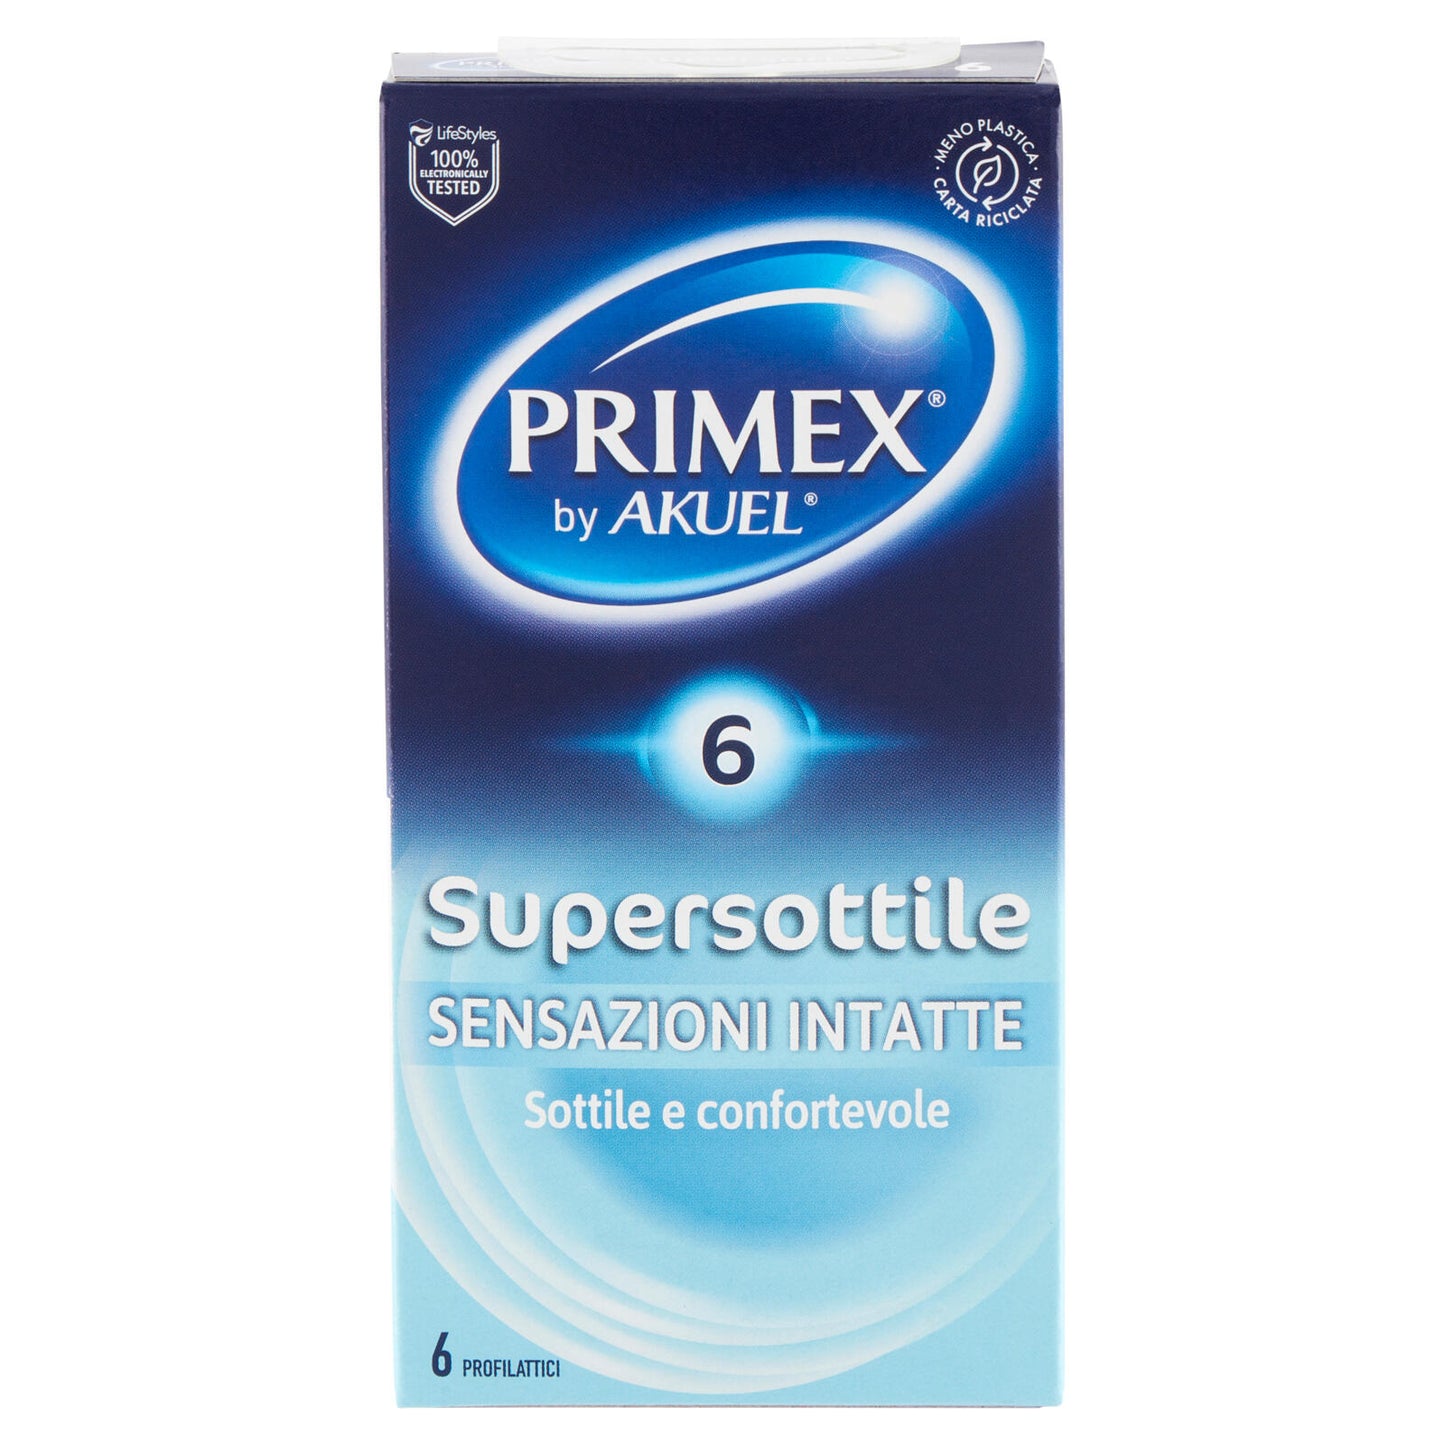 Primex Supersottile 6 pz